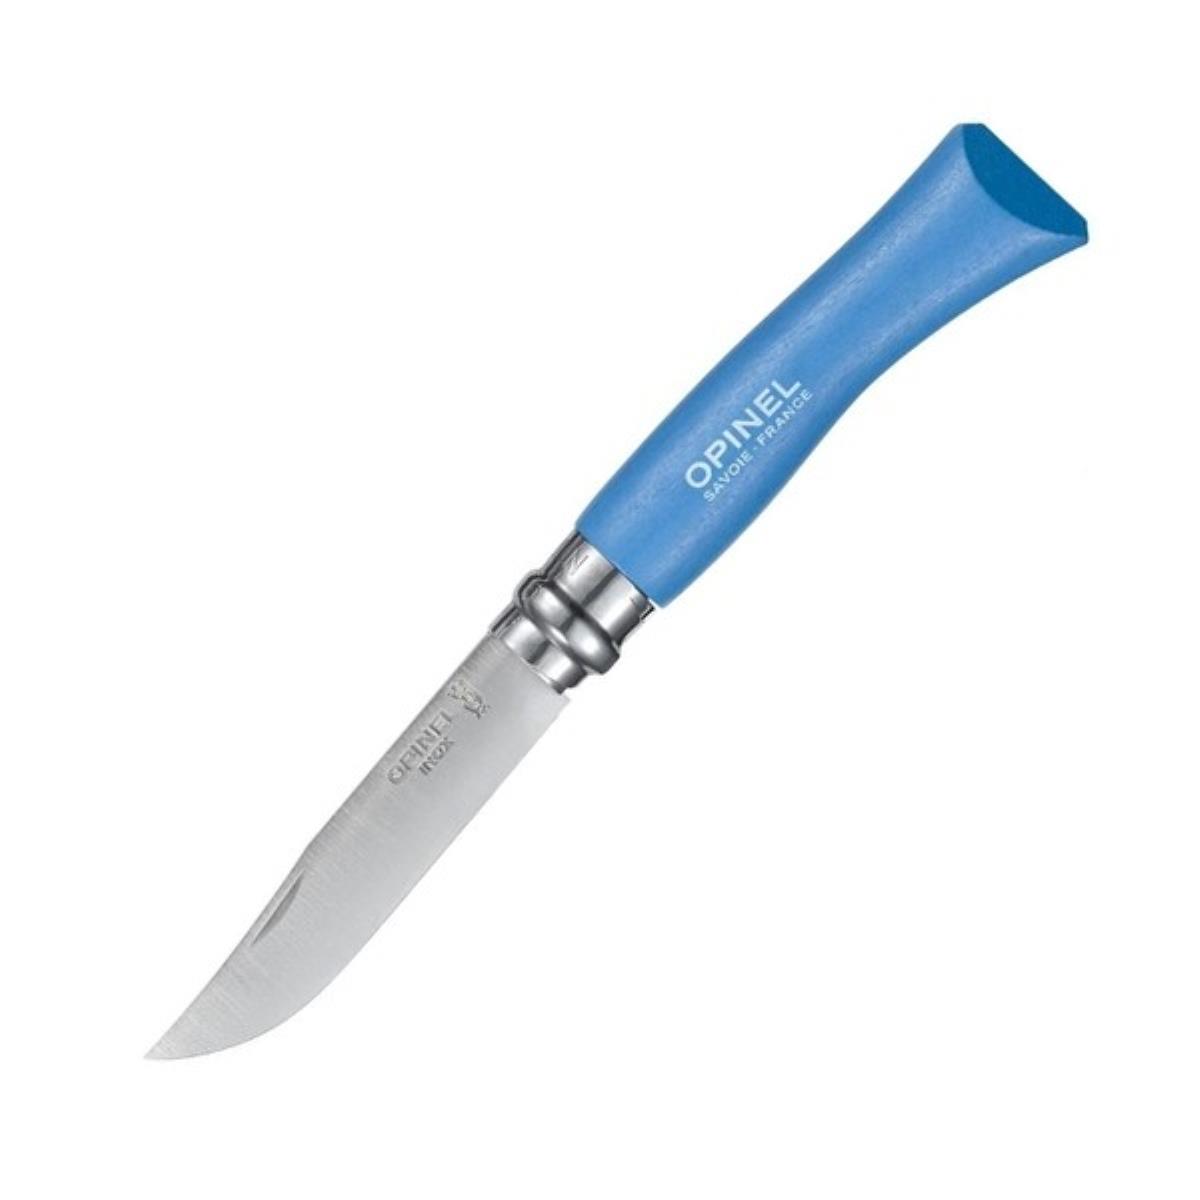 Нож №7 VRI Colored Tradition Sky blue нерж. сталь, рукоять граб, длина клинка8см (голубой) OPINEL авторский нож паук сталь мозаичный дамаск рукоять стабилизированный граб вставка стабилизированный зуб мамонта